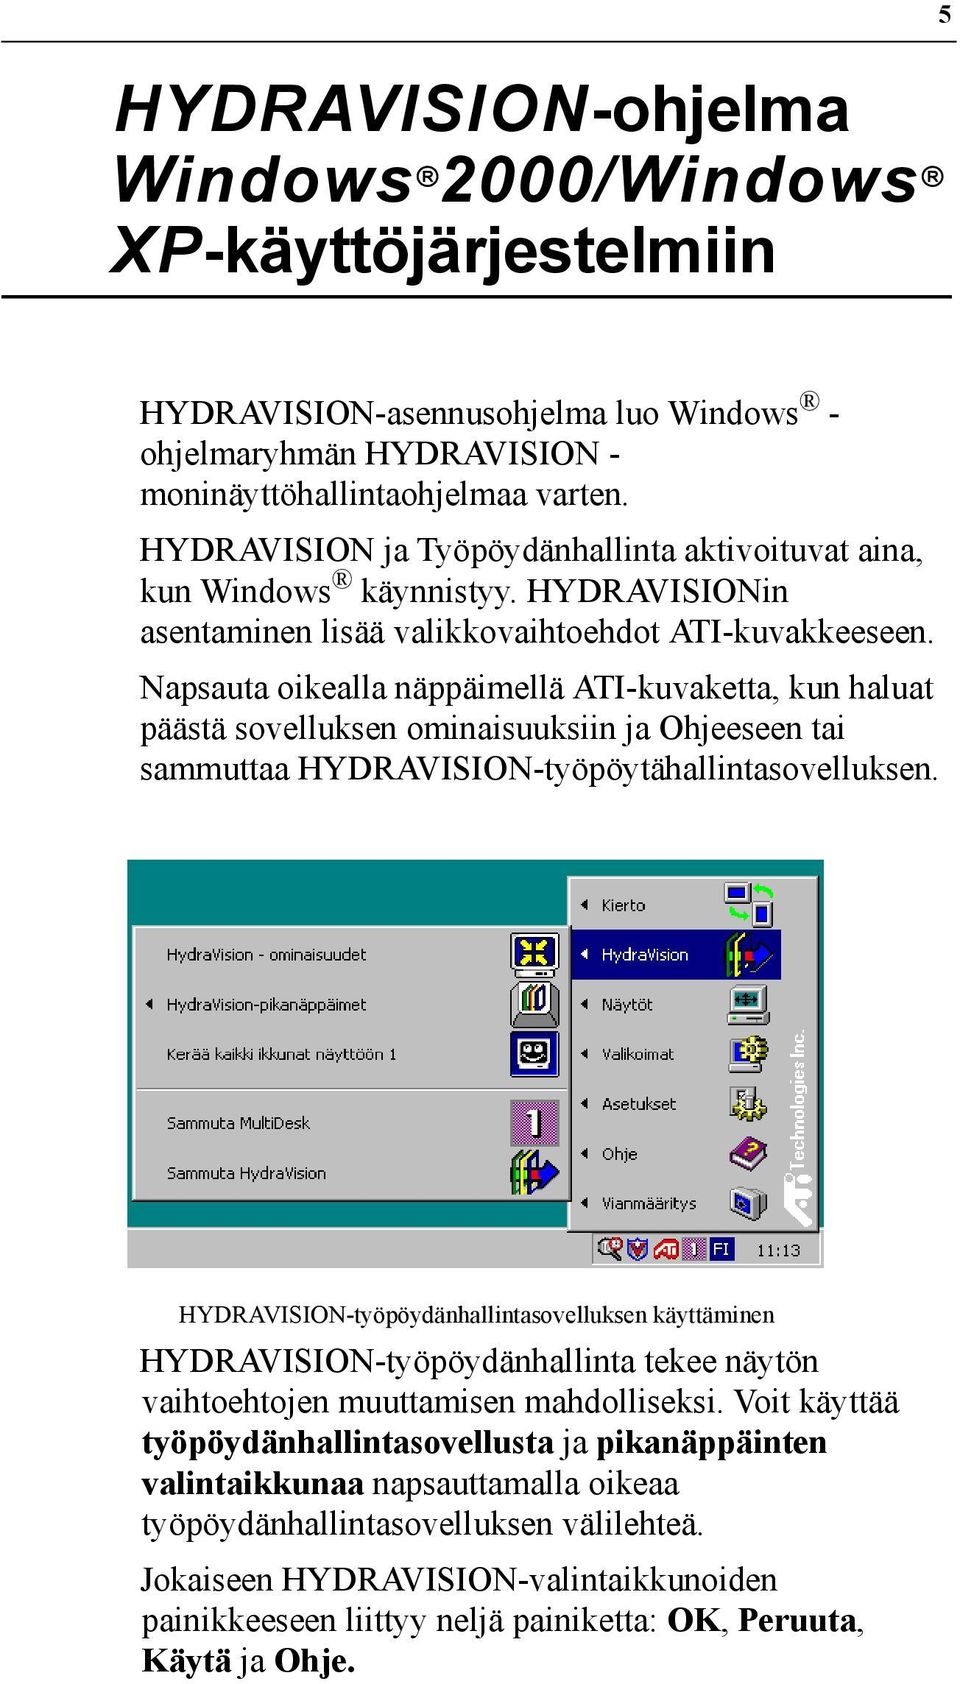 Napsauta oikealla näppäimellä ATI-kuvaketta, kun haluat päästä sovelluksen ominaisuuksiin ja Ohjeeseen tai sammuttaa HYDRAVISION-työpöytähallintasovelluksen.